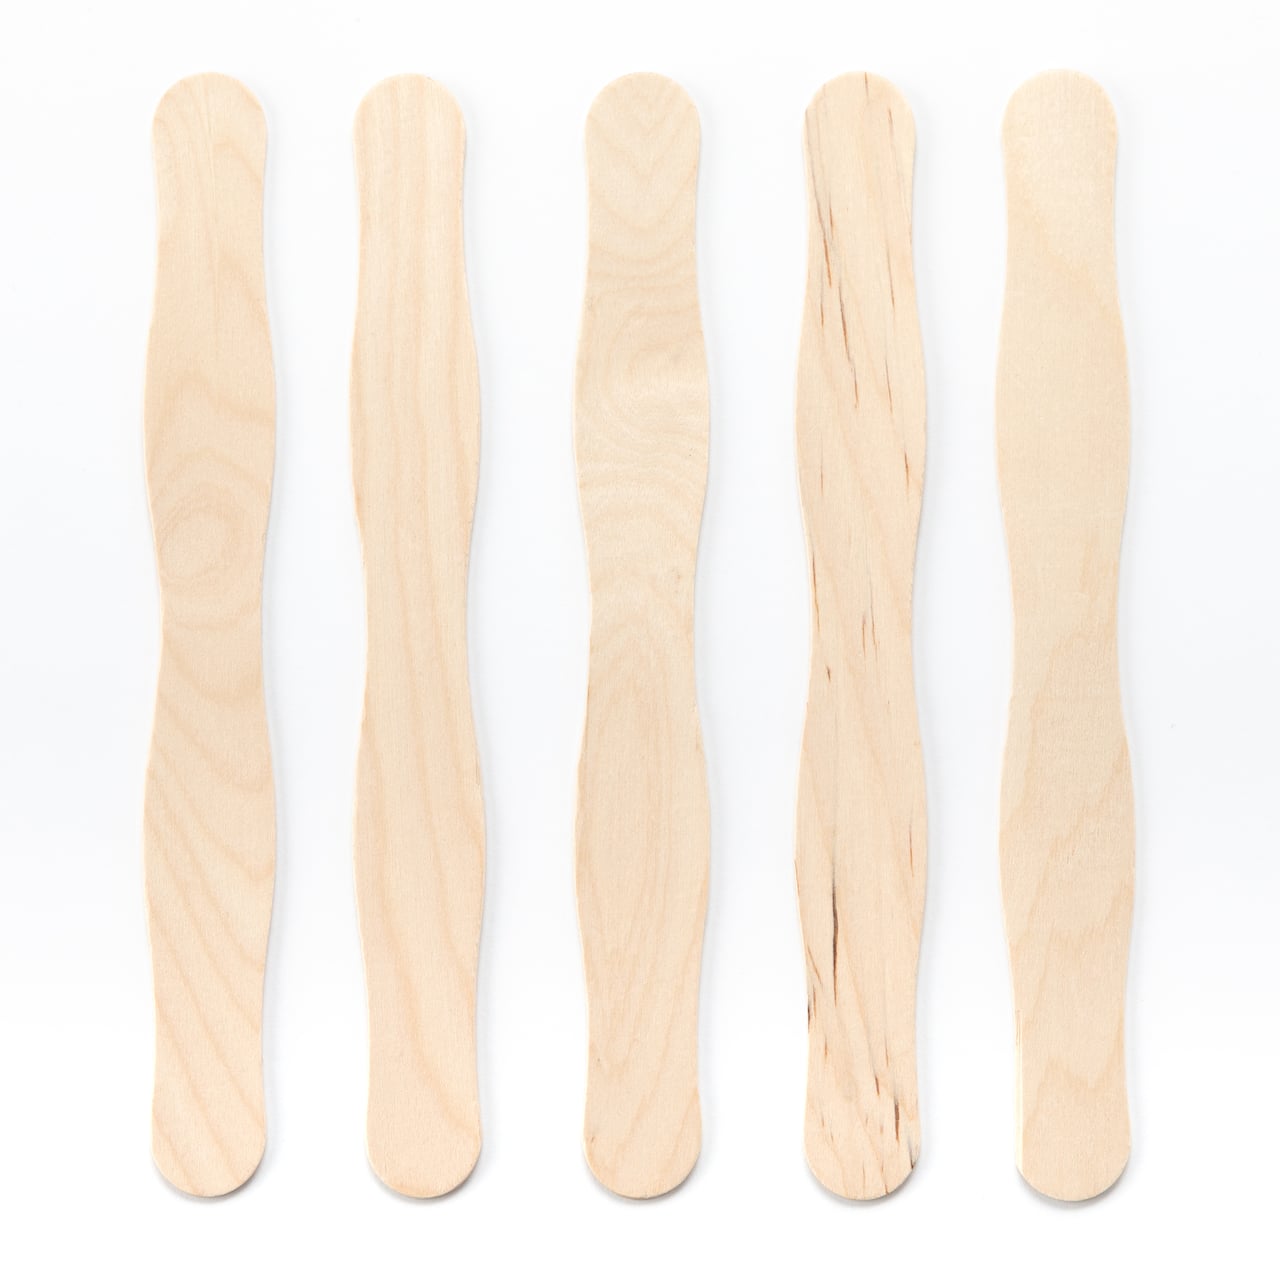 Wavy Jumbo Wood Craft Sticks by Creatology®